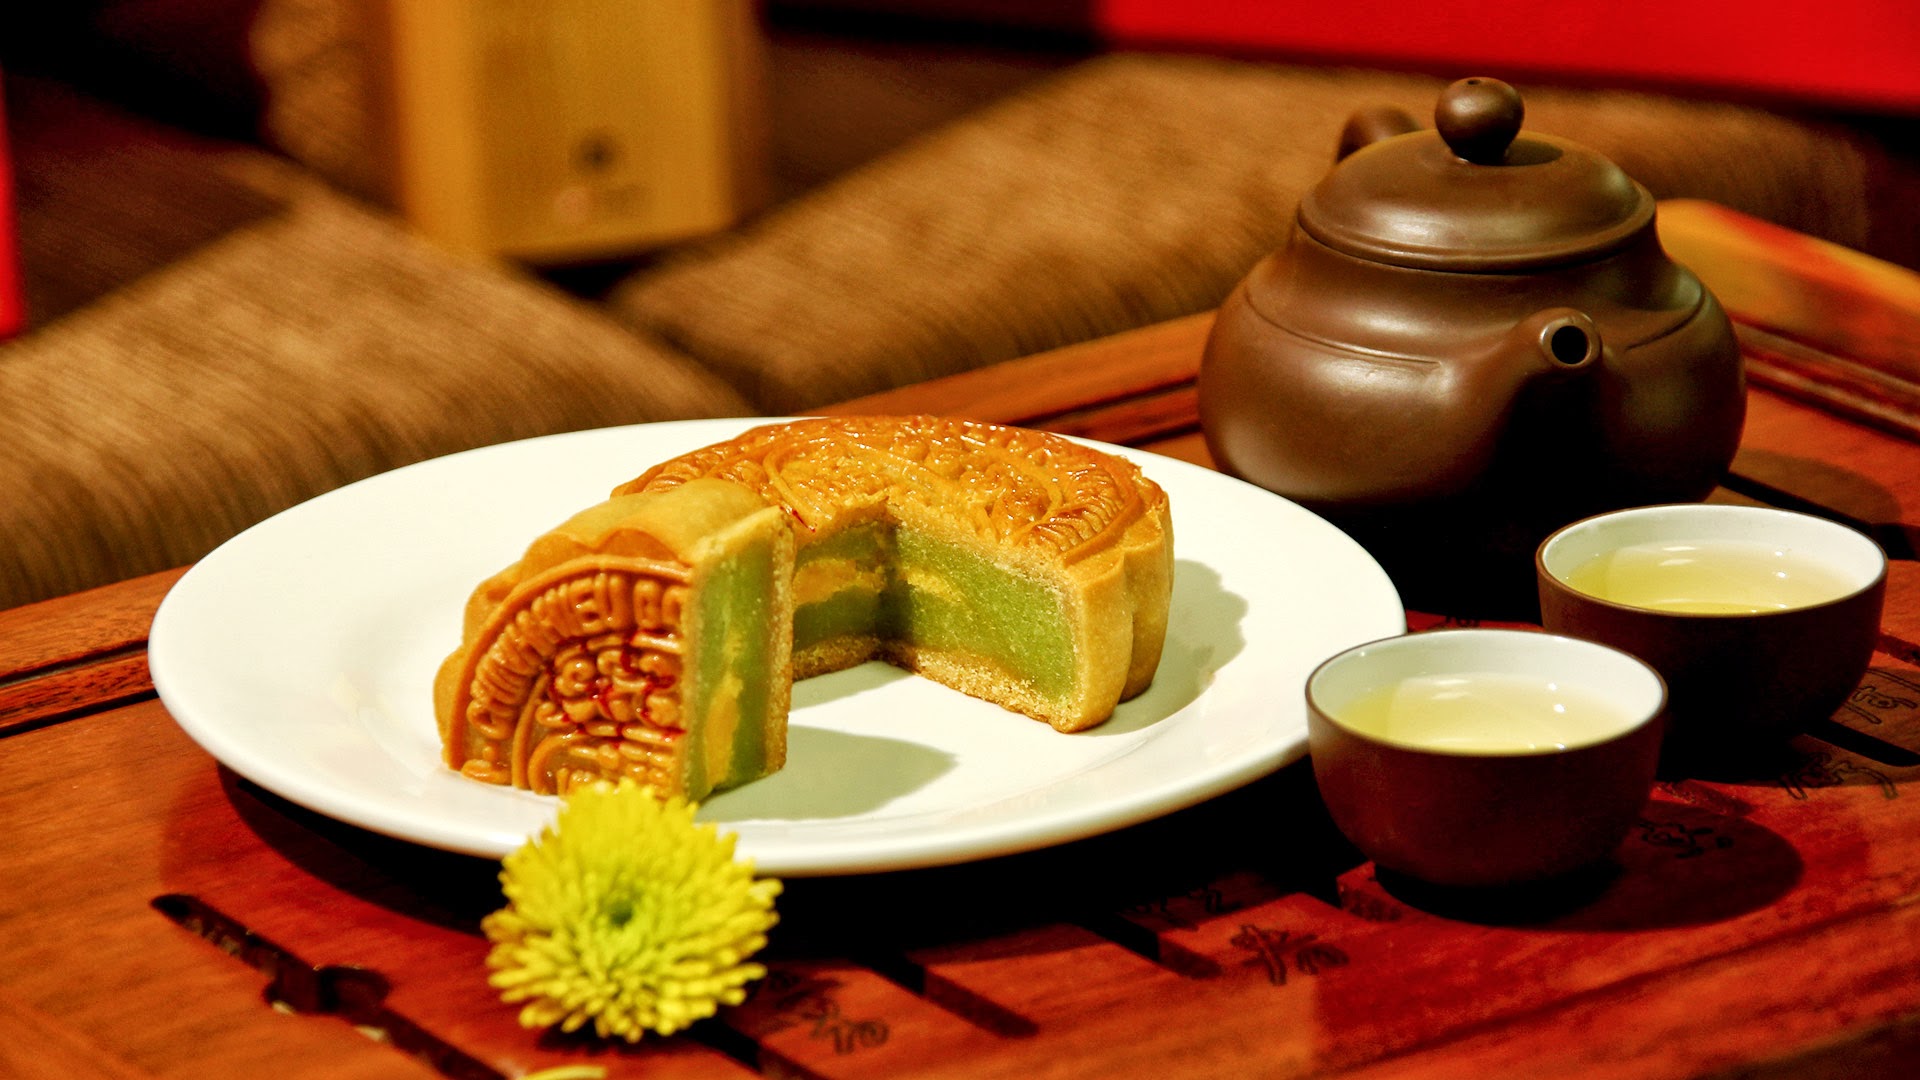 Bánh trung thu nhân trà xanh dẻo thơm với 2 công thức đặc biệt